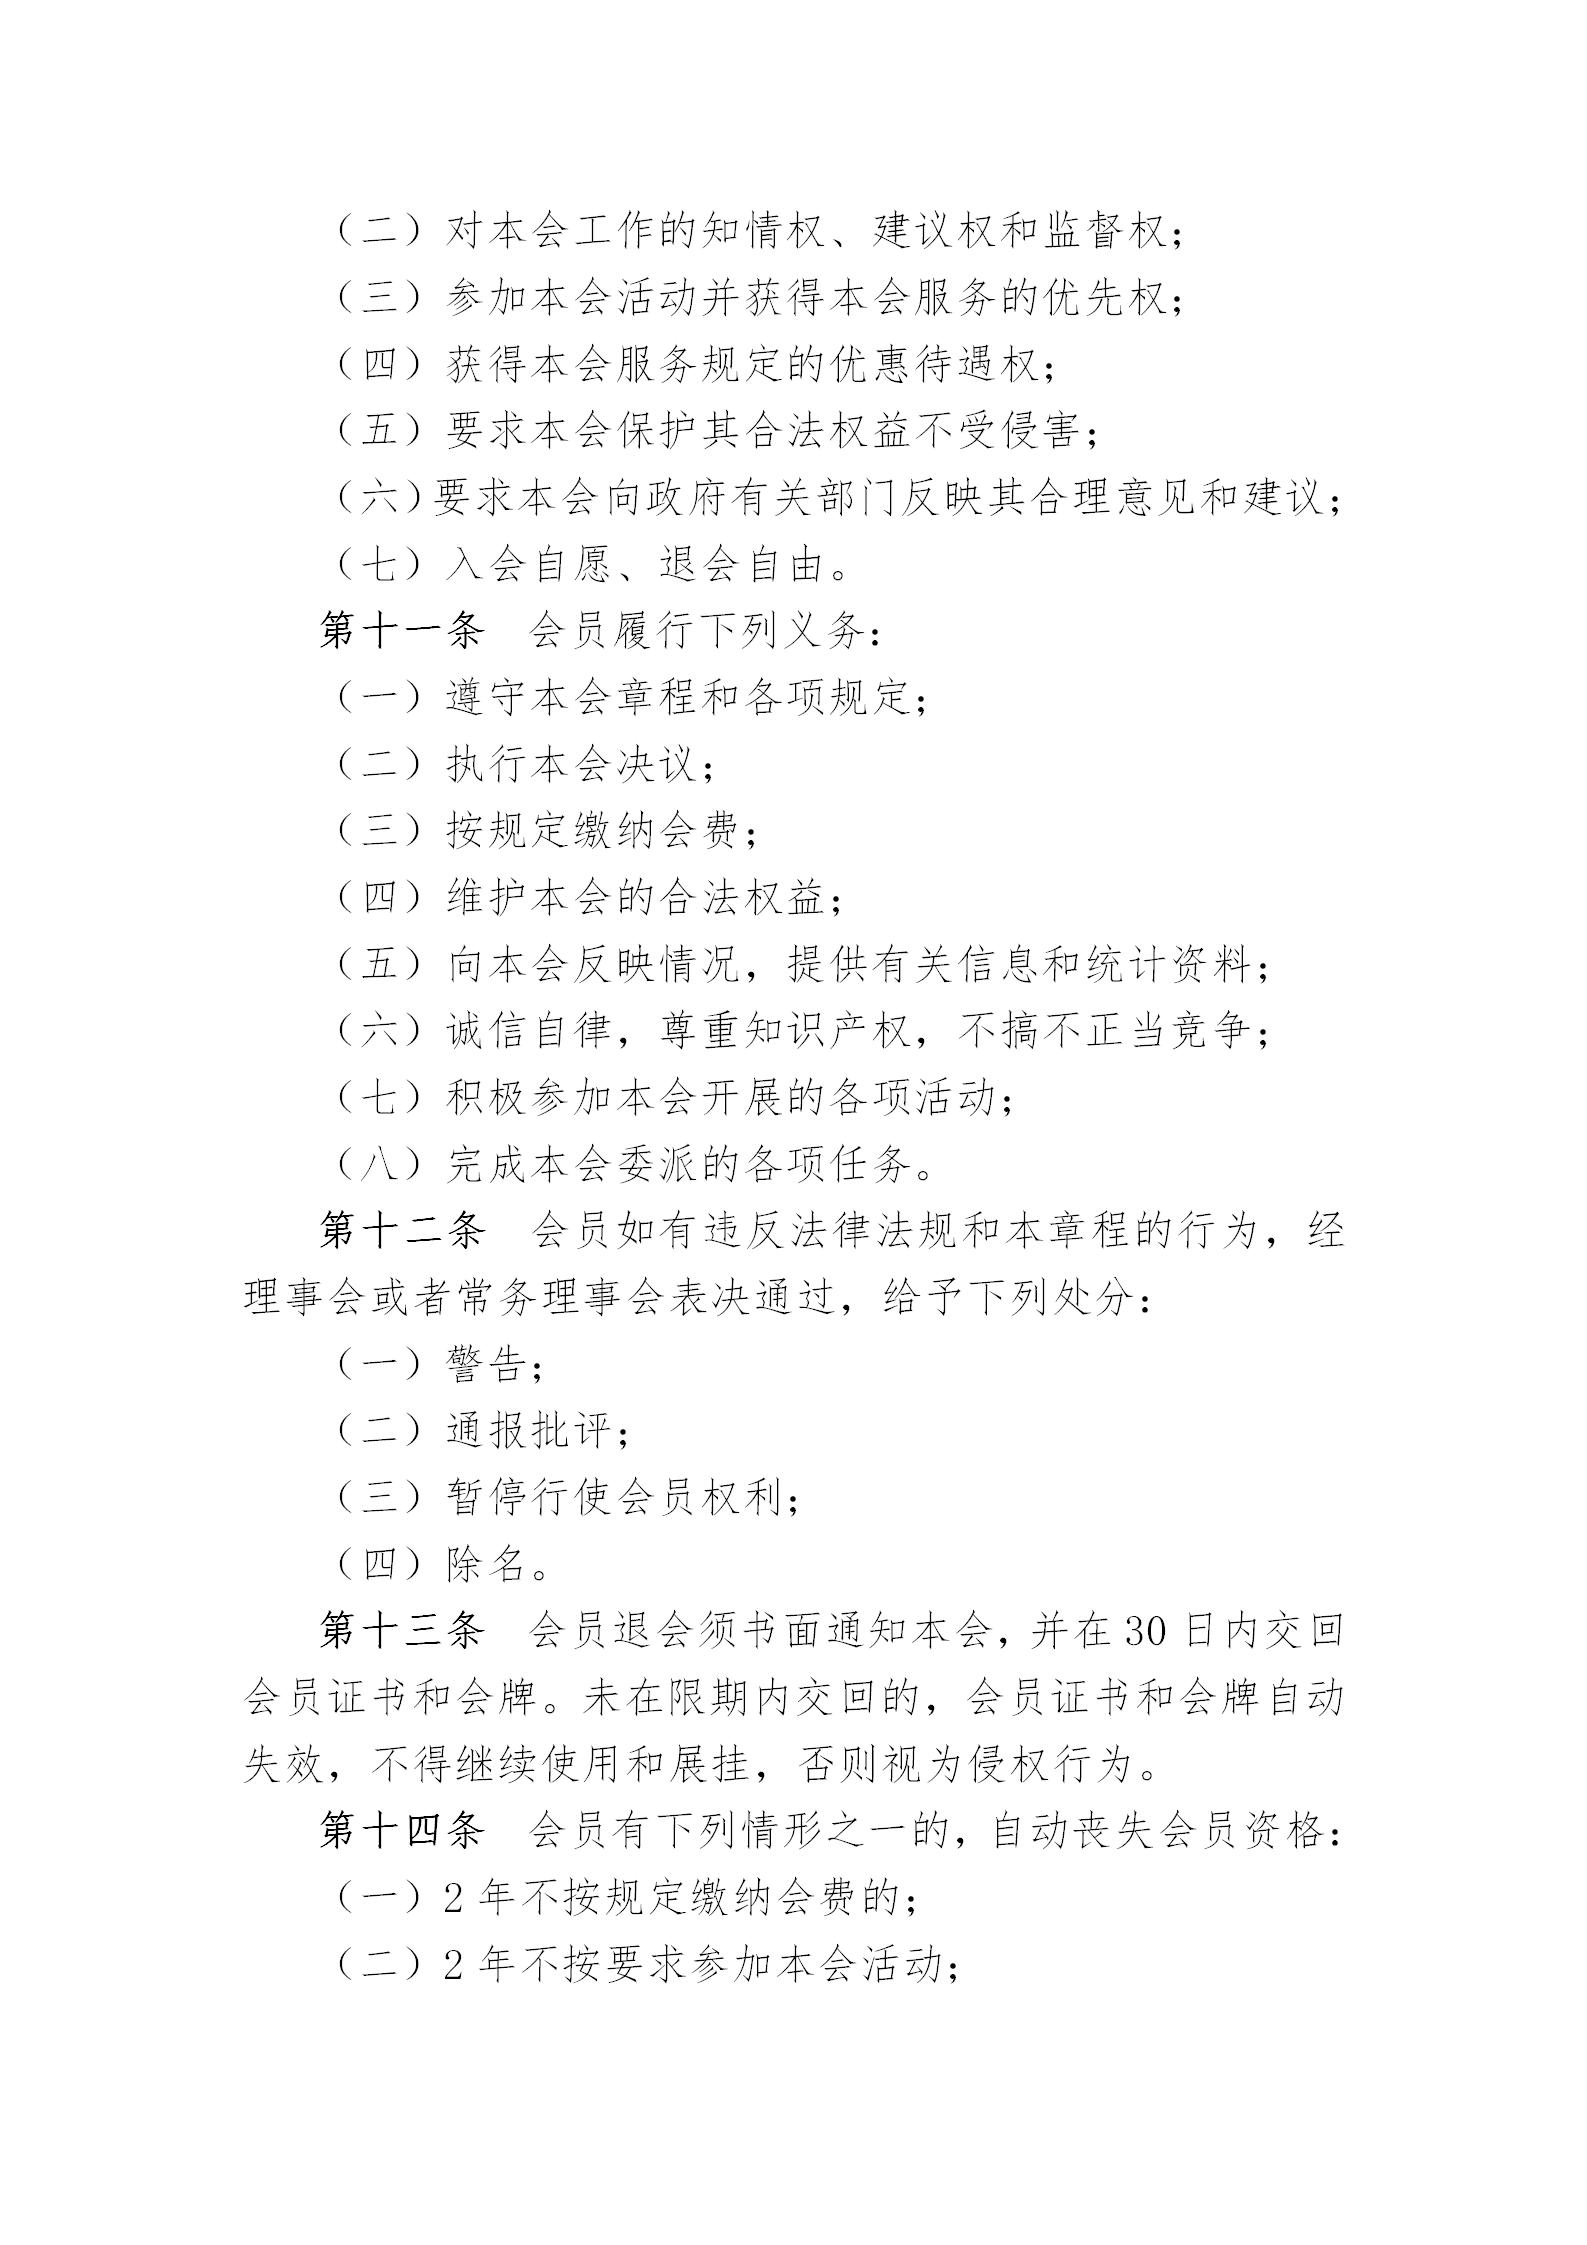 中国演艺设备技术协会章程(定稿)_04.jpg